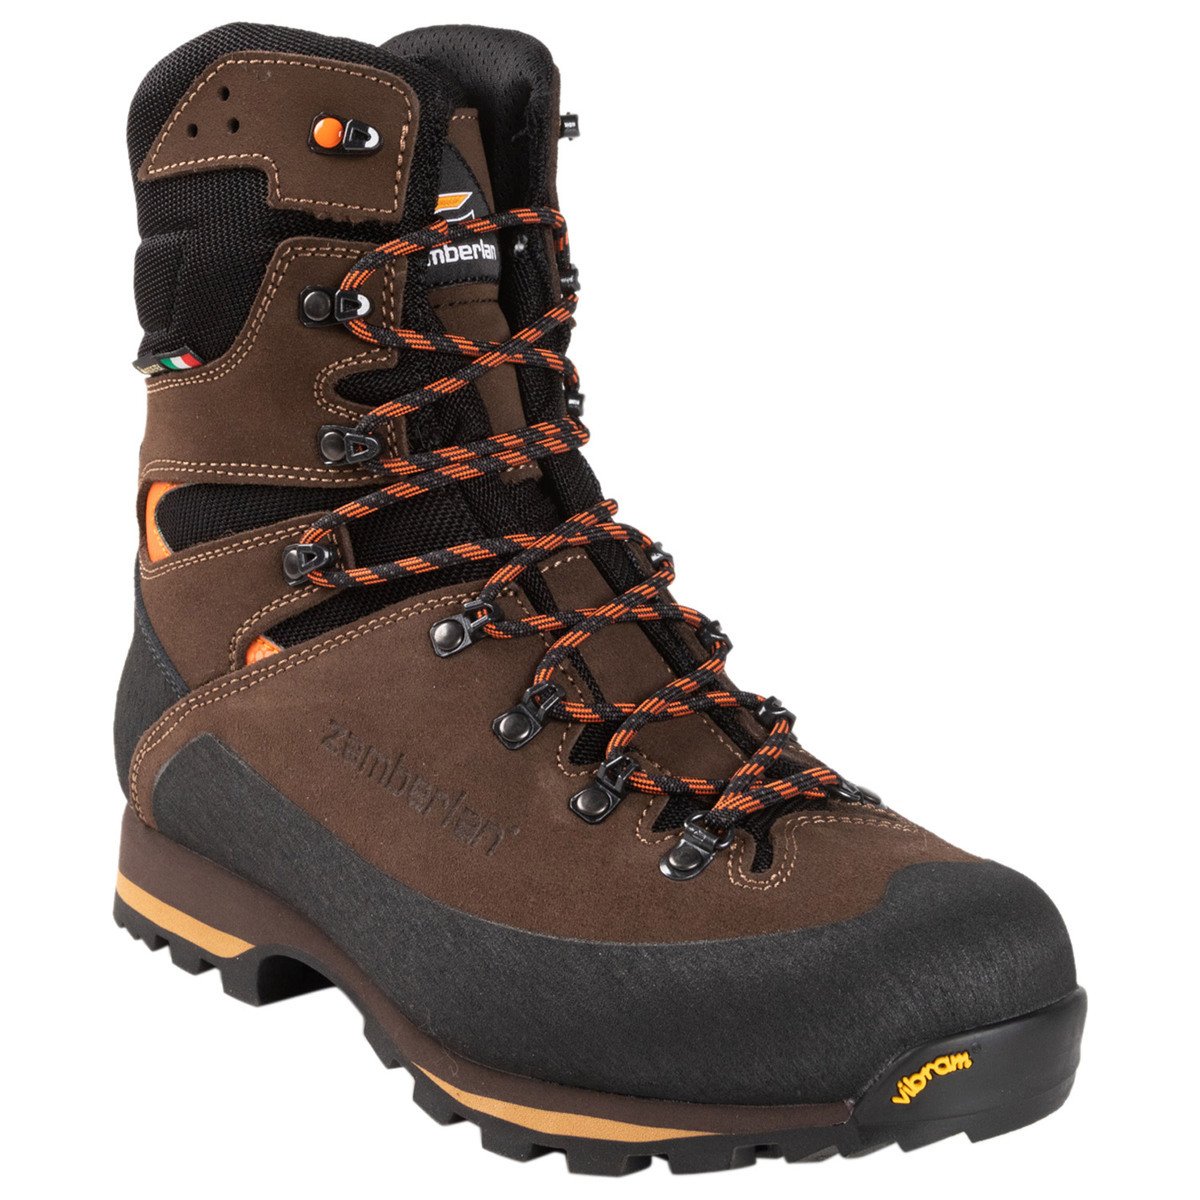 Zamberlan Men's Storm Pro Uninsulated Waterproof Hunting Boots - Dark ...